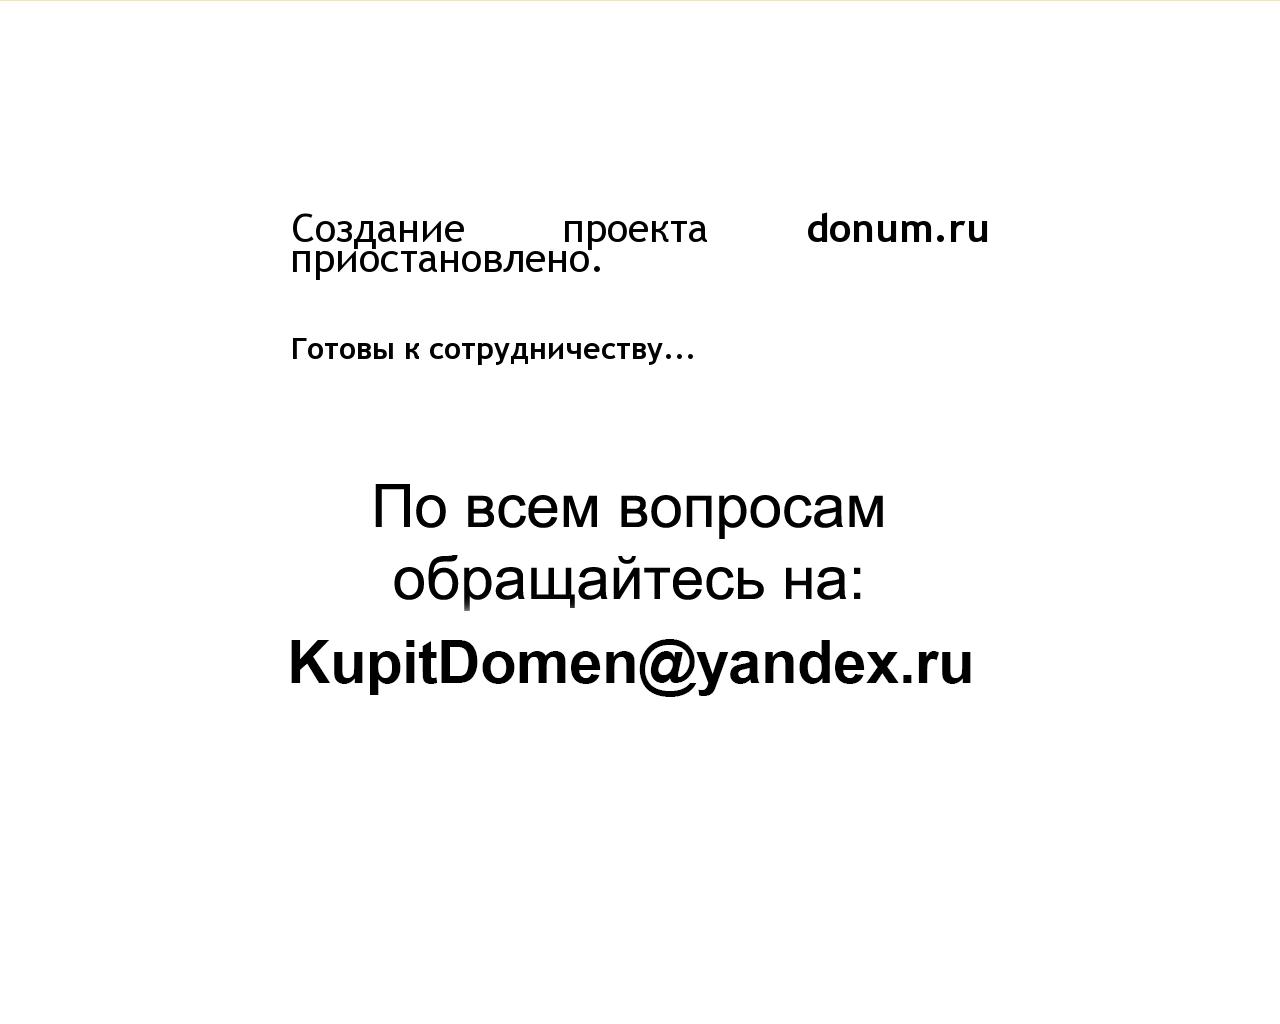 Изображение сайта donum.ru в разрешении 1280x1024